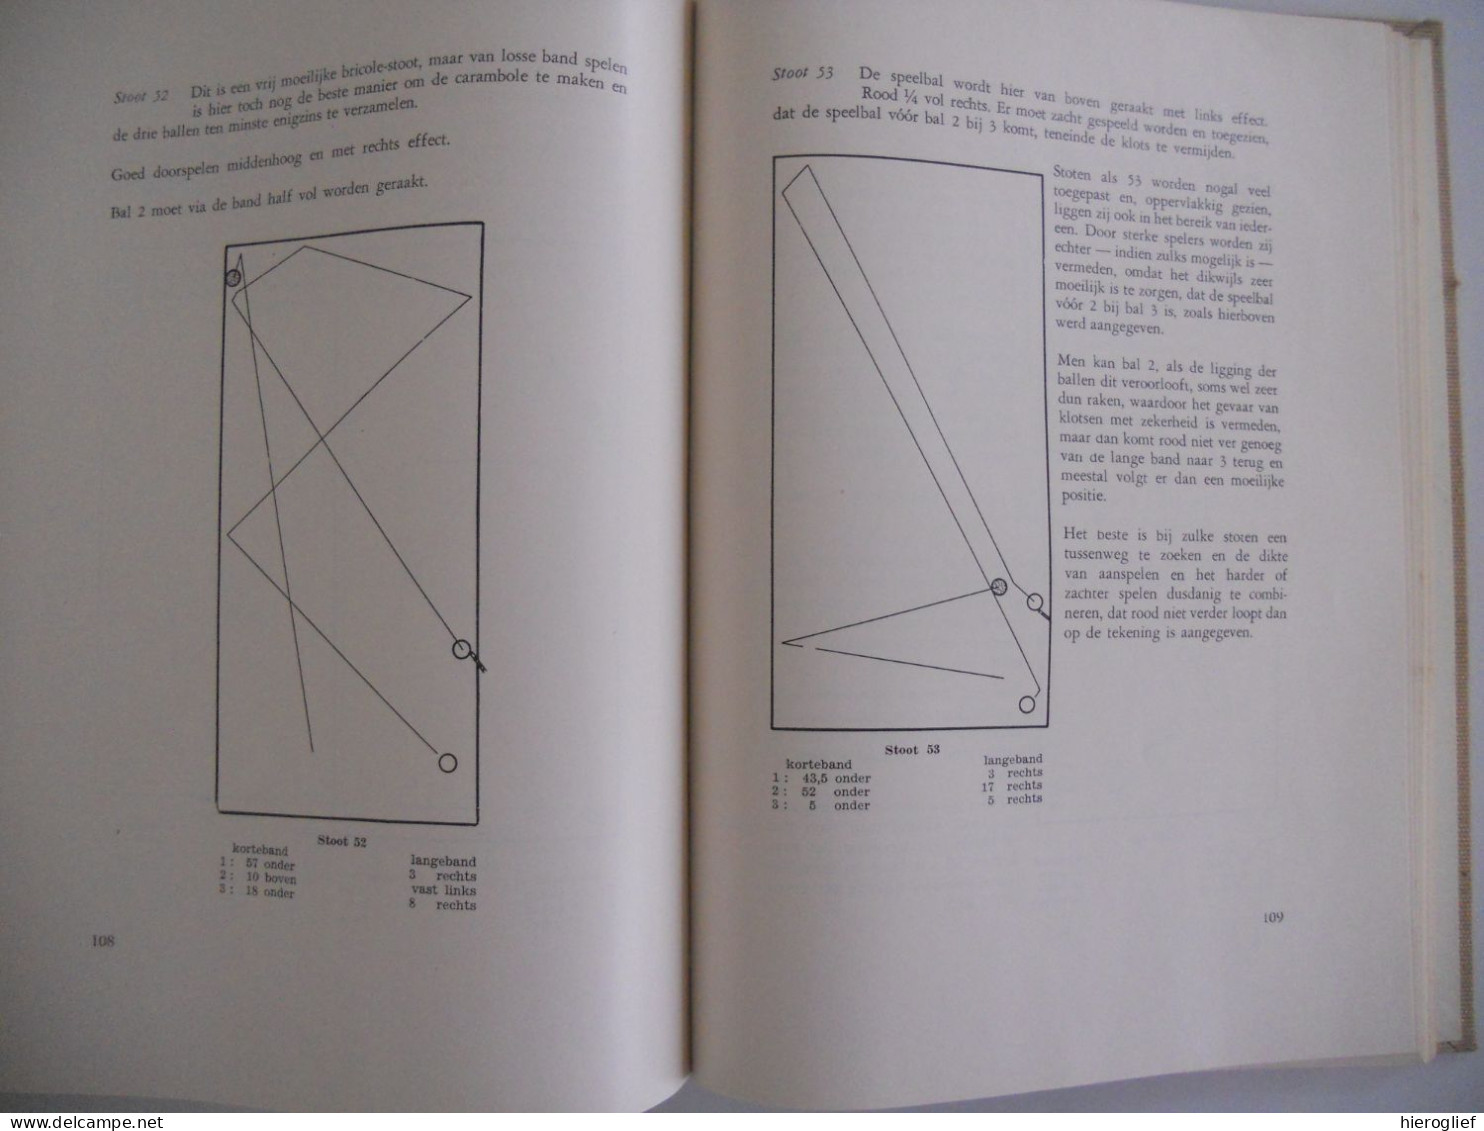 Het biljartspel in praktijk en theorie - 3 delen + atlas - R. Gabriëls & Ir. C. van Haaren / biljart biljarten techniek